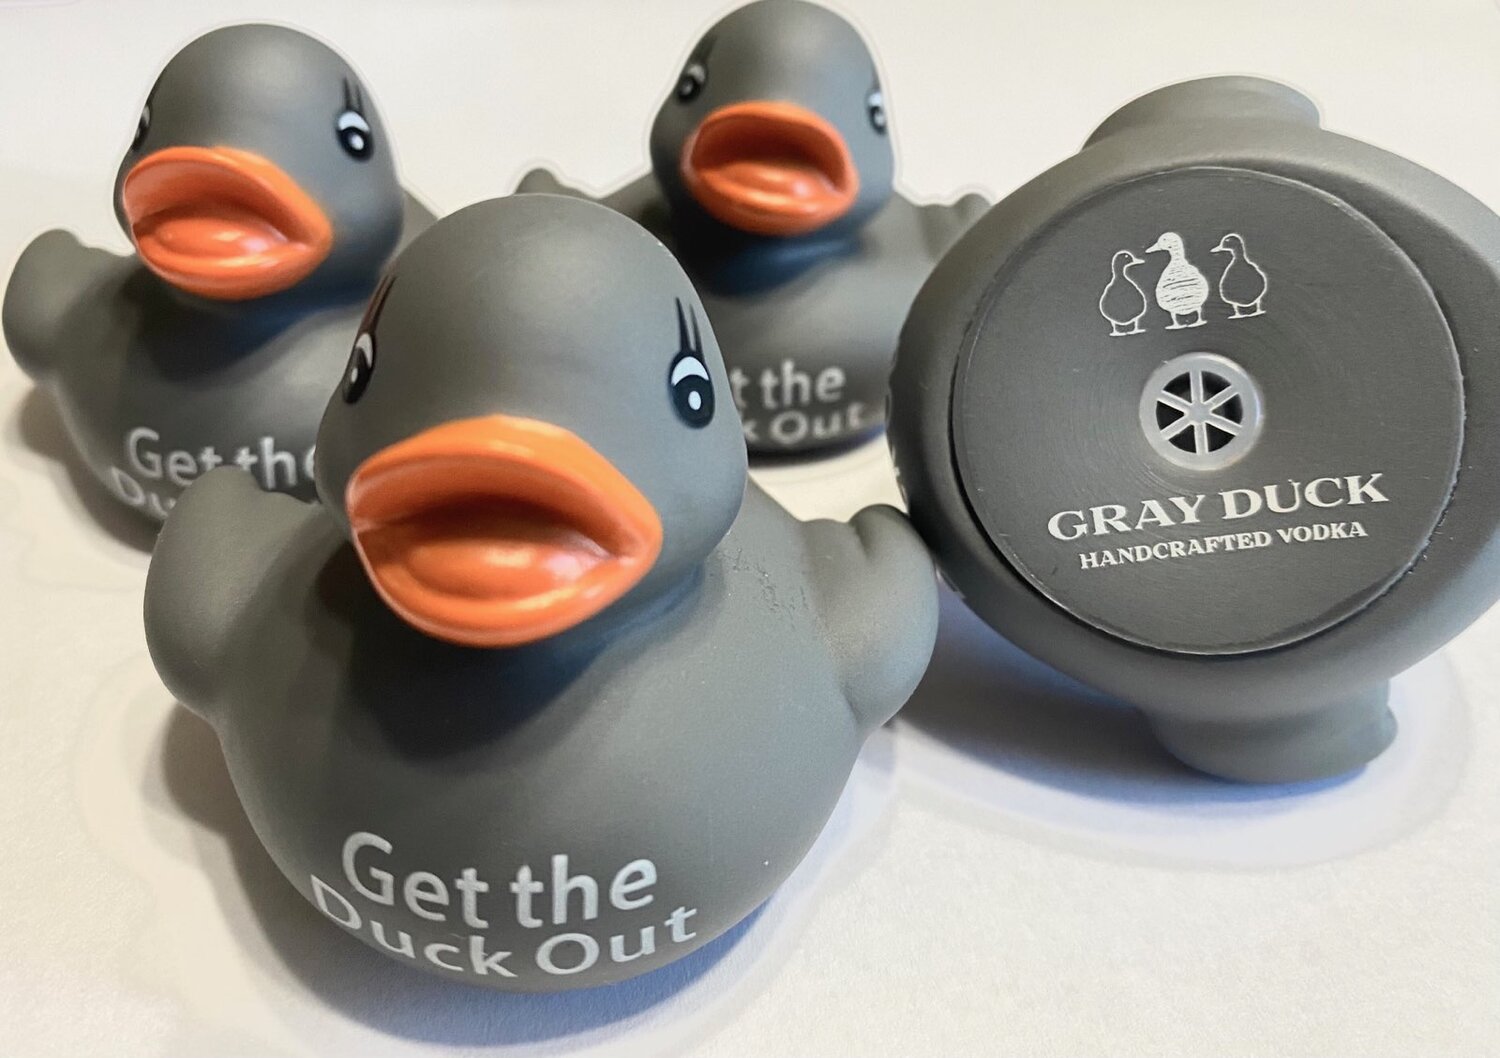 Bucks of America - I Still Play Duck Duck Goose Premium Tee – Bucks of  Nebraska